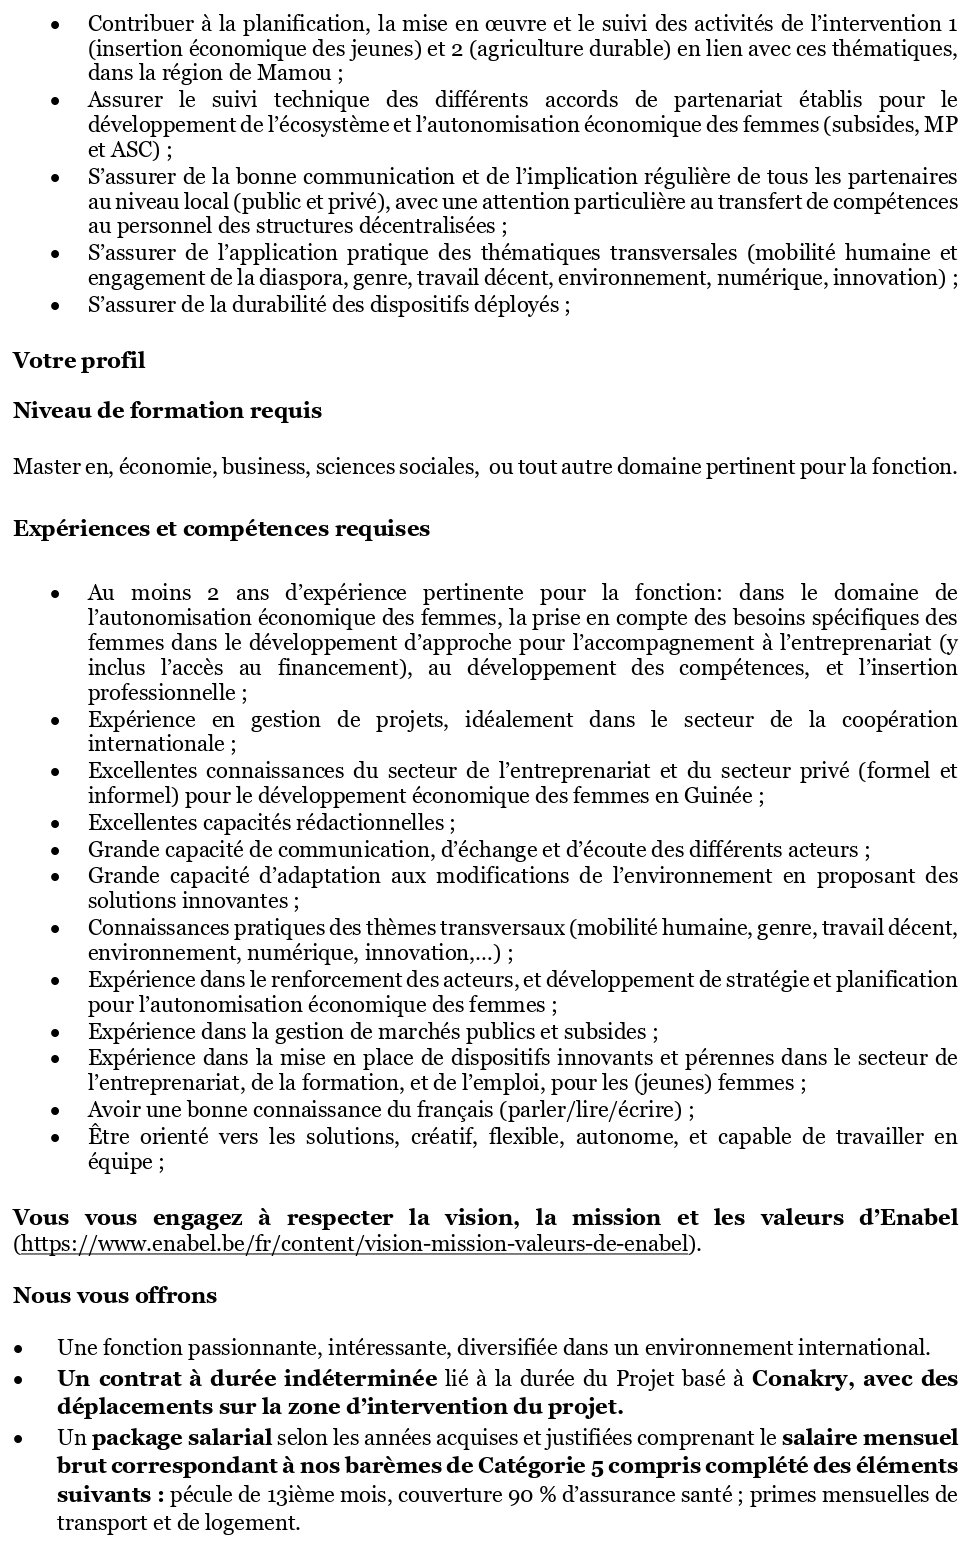 Avis de recrutement d'un Intervention Officer Autonomisation économique des femmes (h/f/x) – Guinée | Page 2